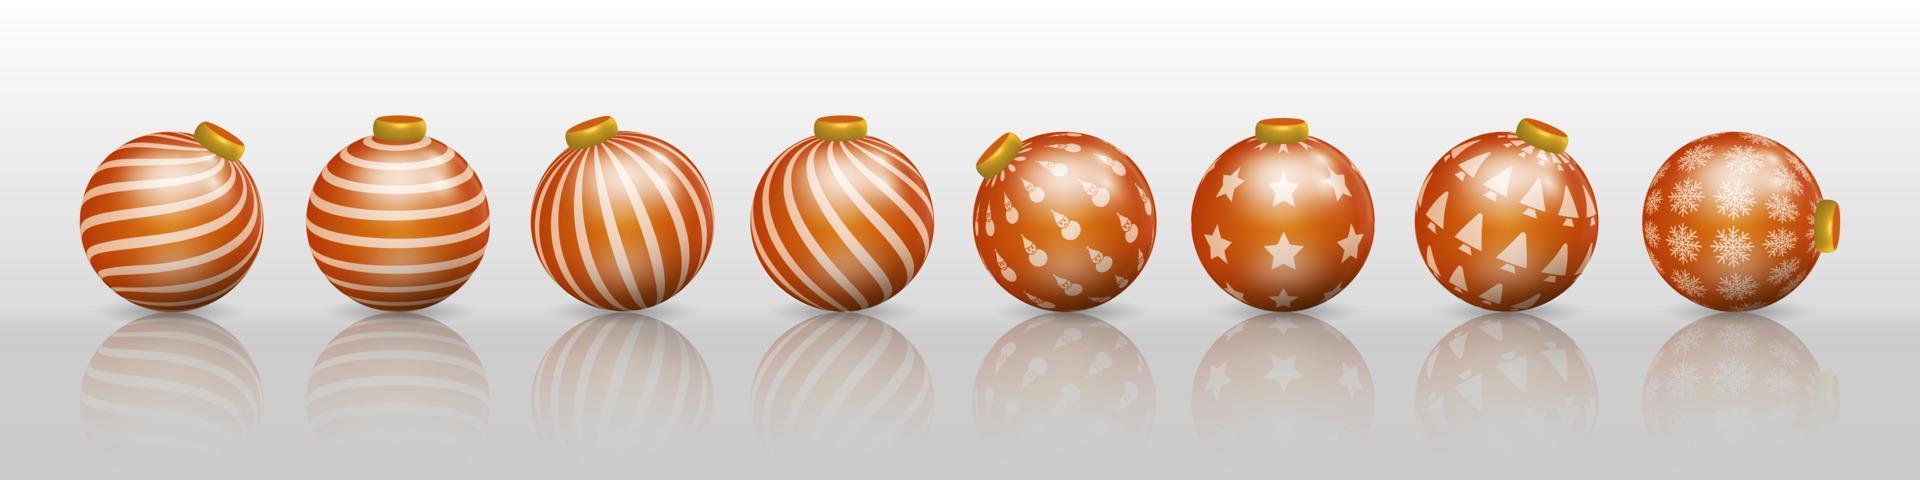 conjunto de decorações de bola de natal laranja, enfeites com vários padrões vetor